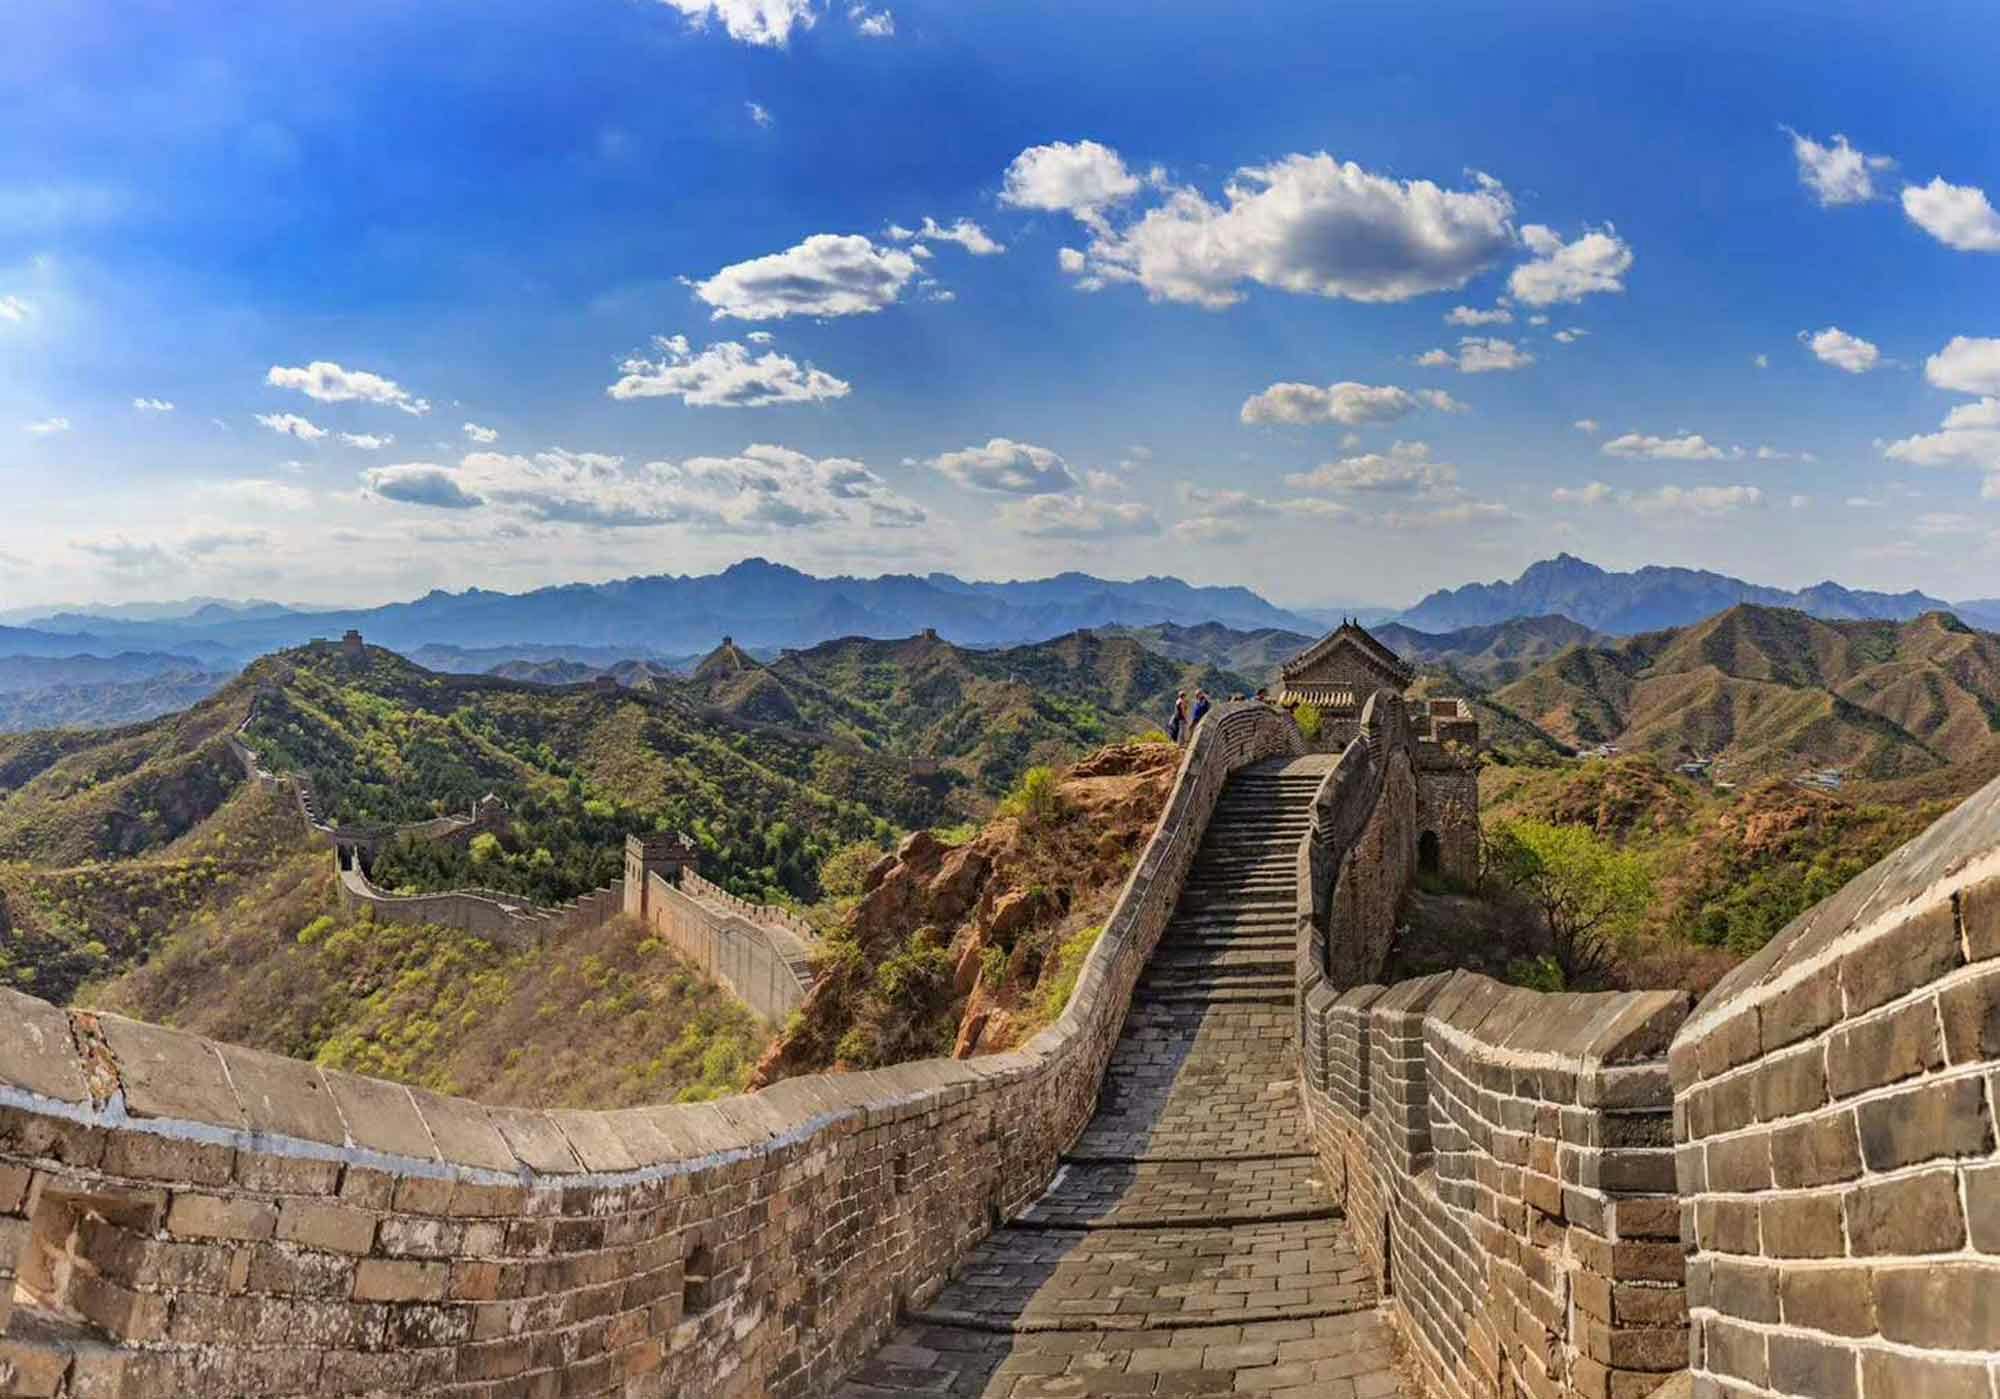 Halbtägige private Wanderung an der Mutianyu-Chinesischen Mauer